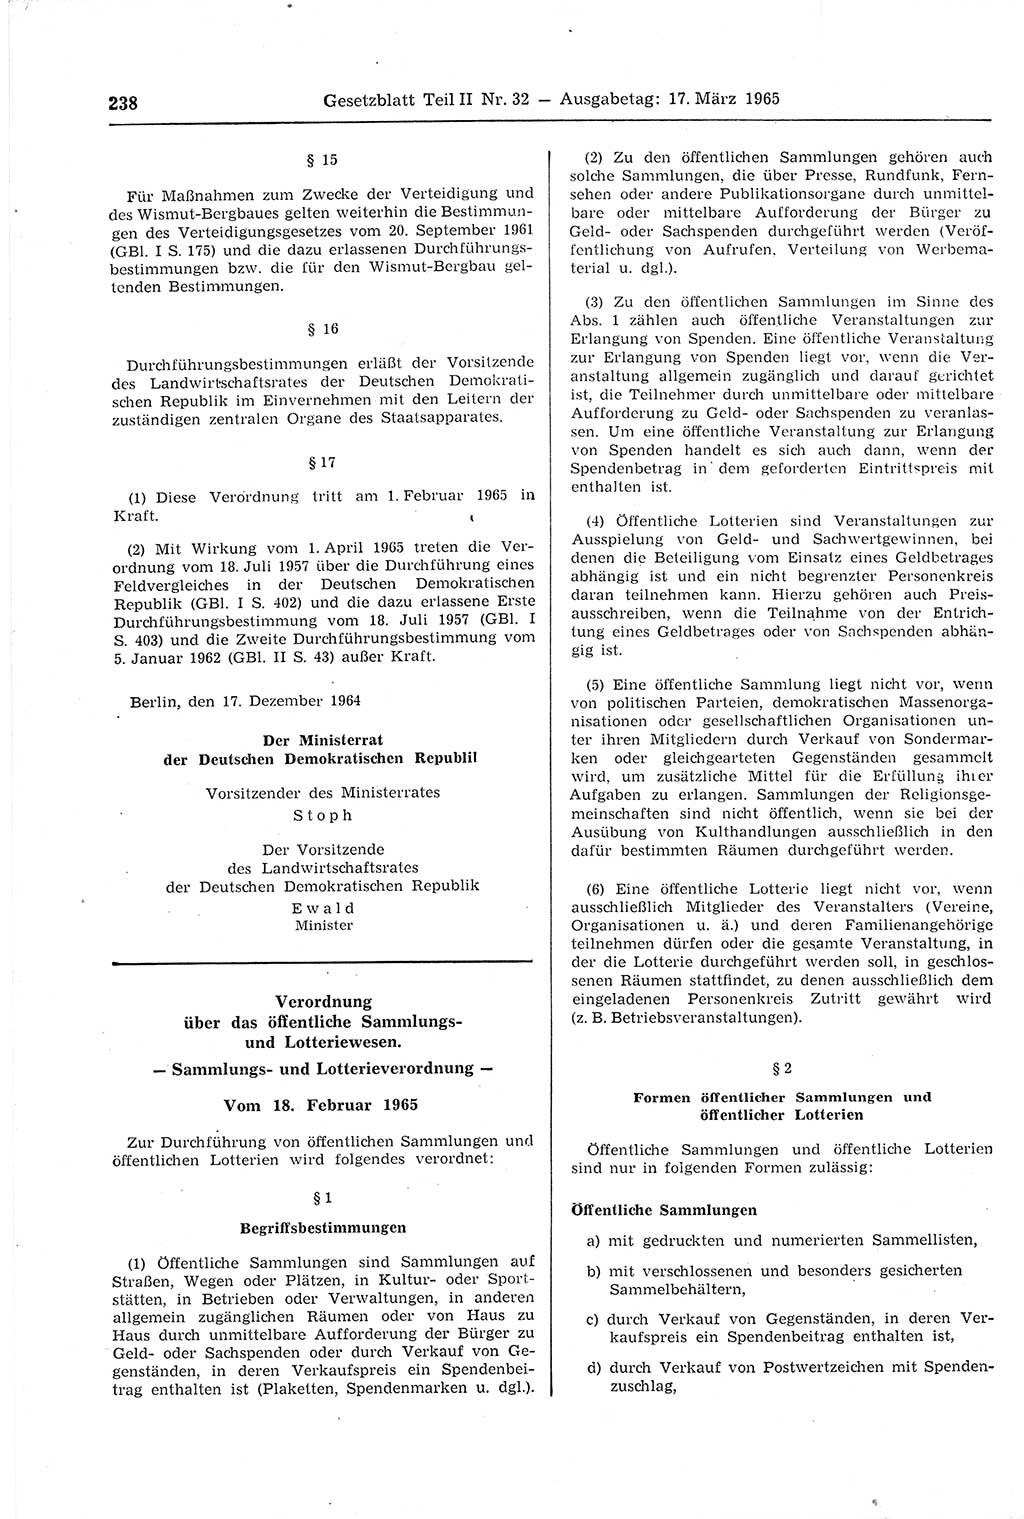 Gesetzblatt (GBl.) der Deutschen Demokratischen Republik (DDR) Teil ⅠⅠ 1965, Seite 238 (GBl. DDR ⅠⅠ 1965, S. 238)